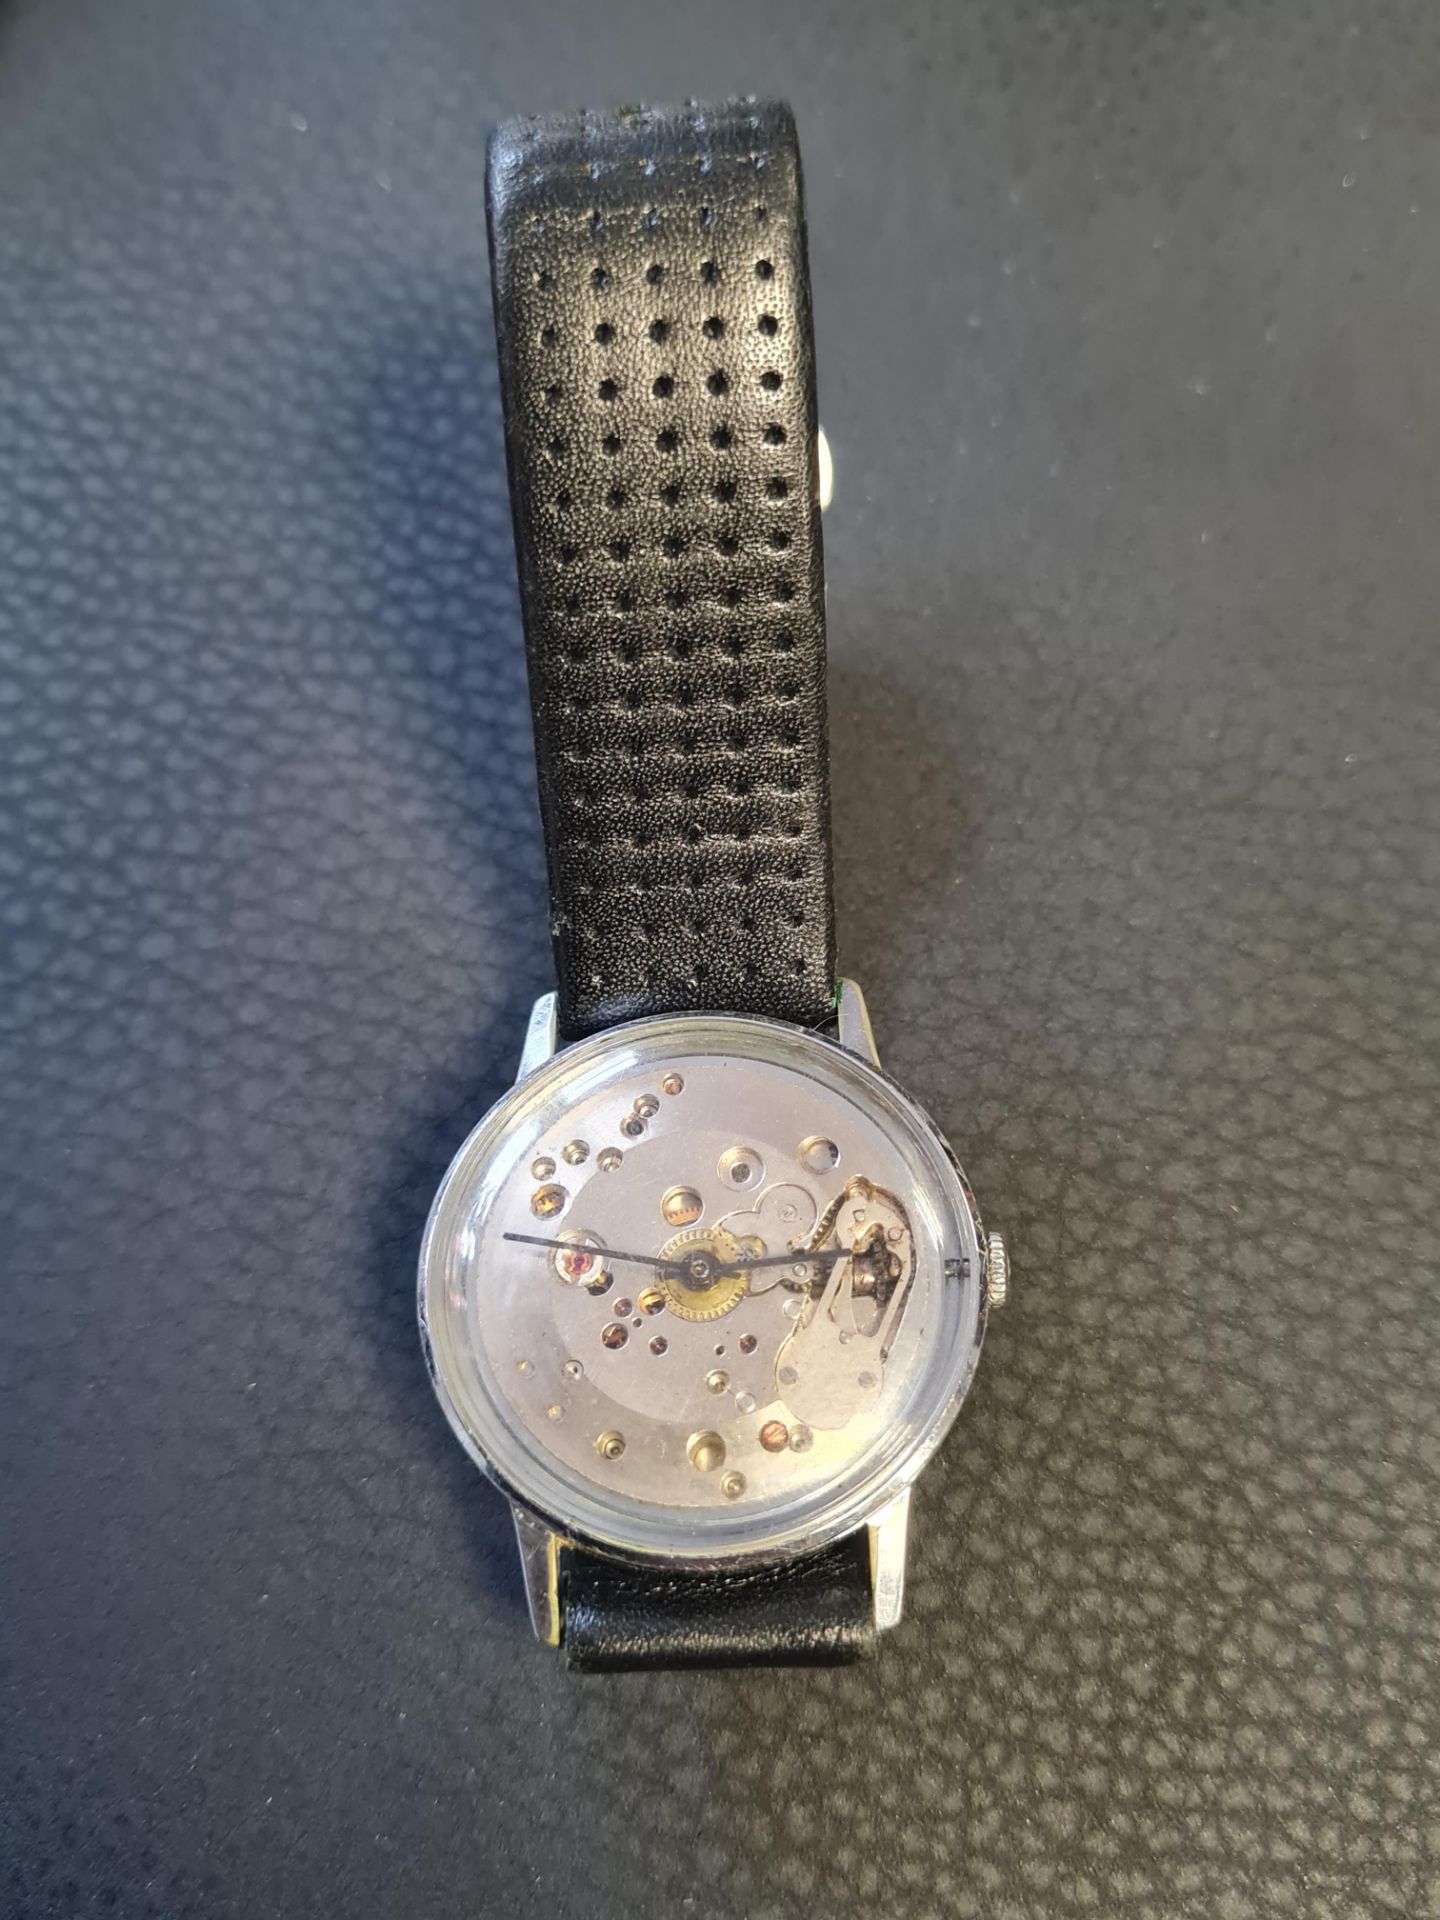 Vintage Skelton Watch working